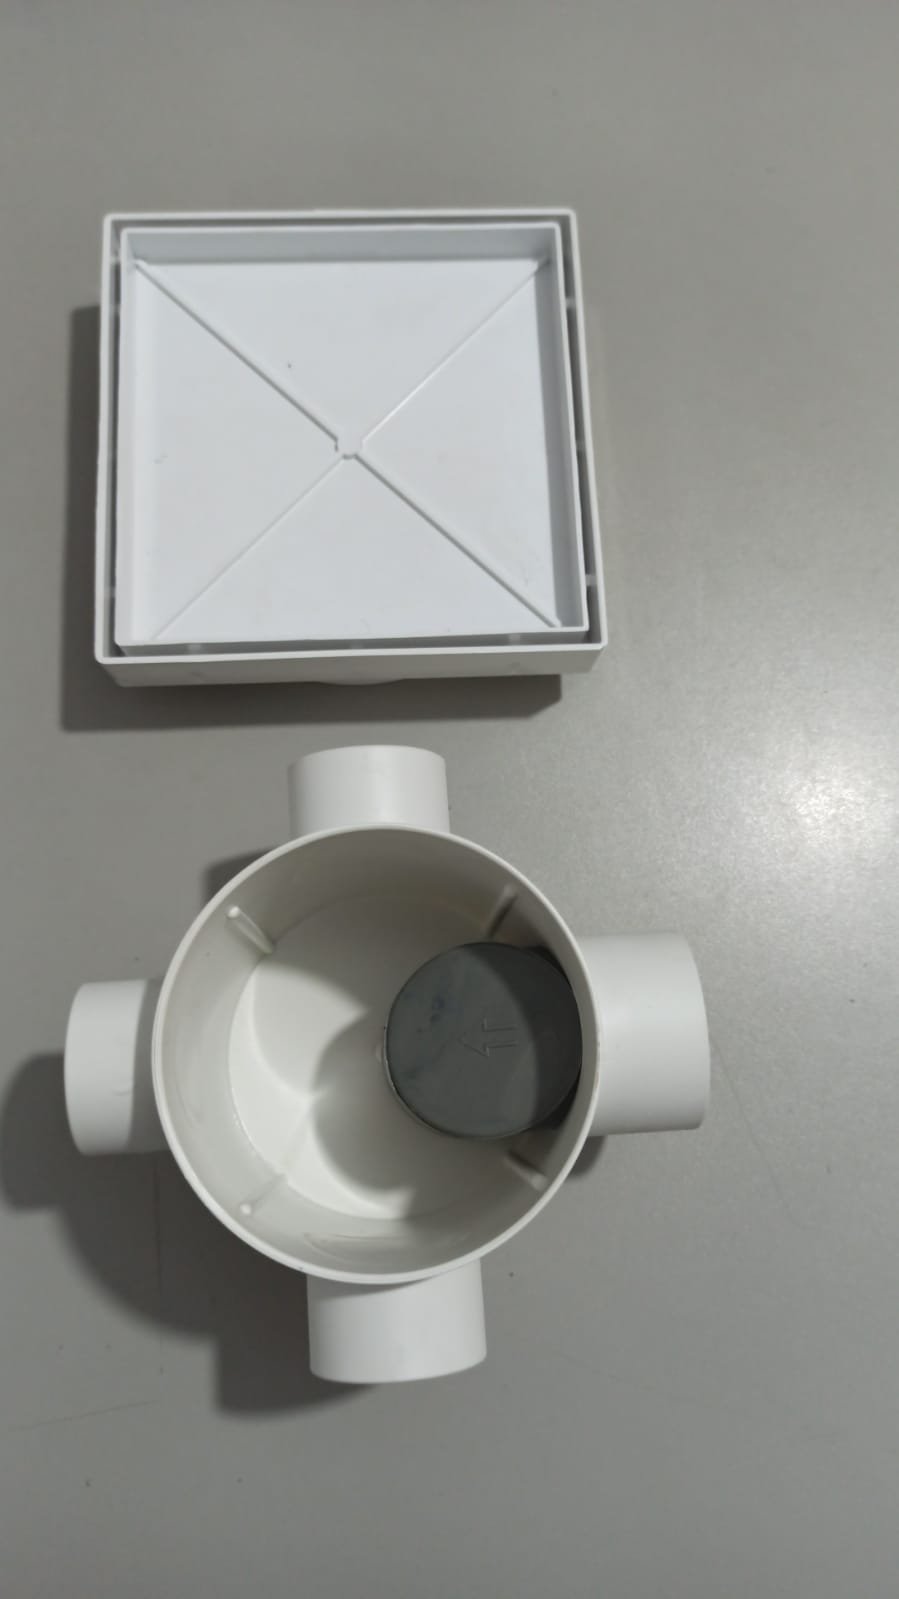 Ralo Invisível Sifonado 15x15 Branco Banheiro modelo Porcelanato Colar Piso com Caixa Sifonada 100 - - 2